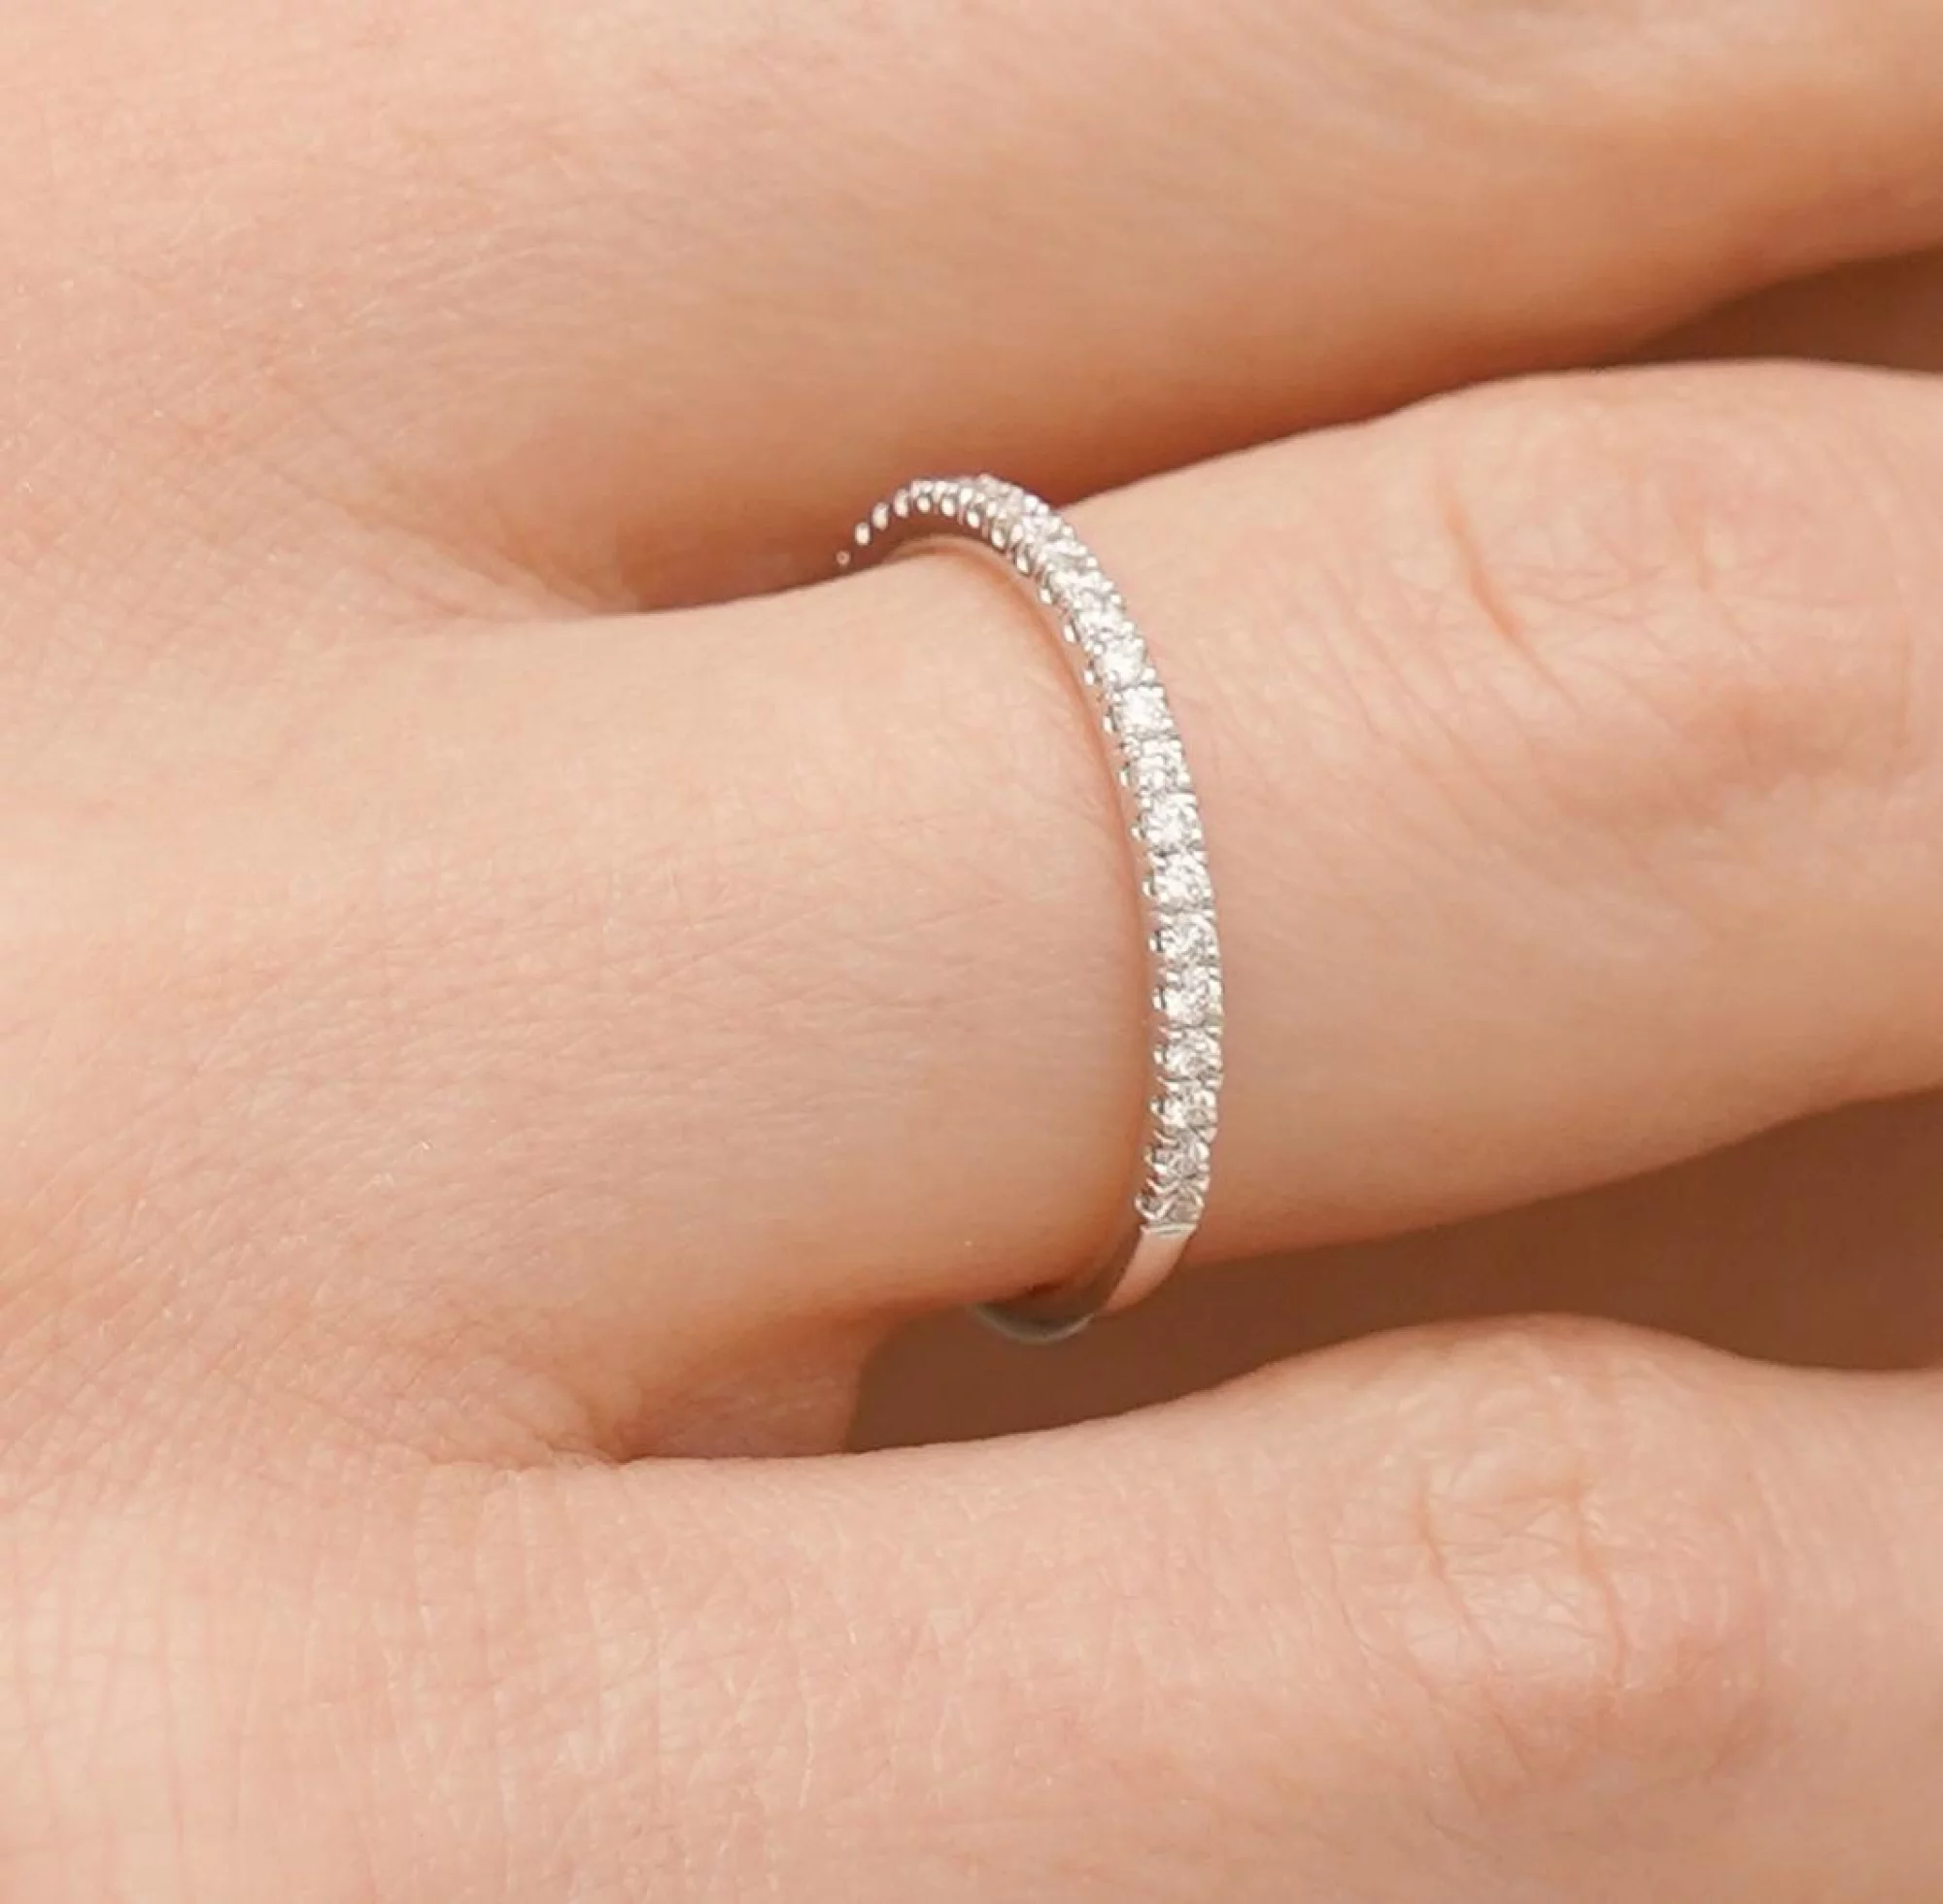 Тонкое золотое кольцо с дорожкой бриллиантов - 1704453 – изображение 2